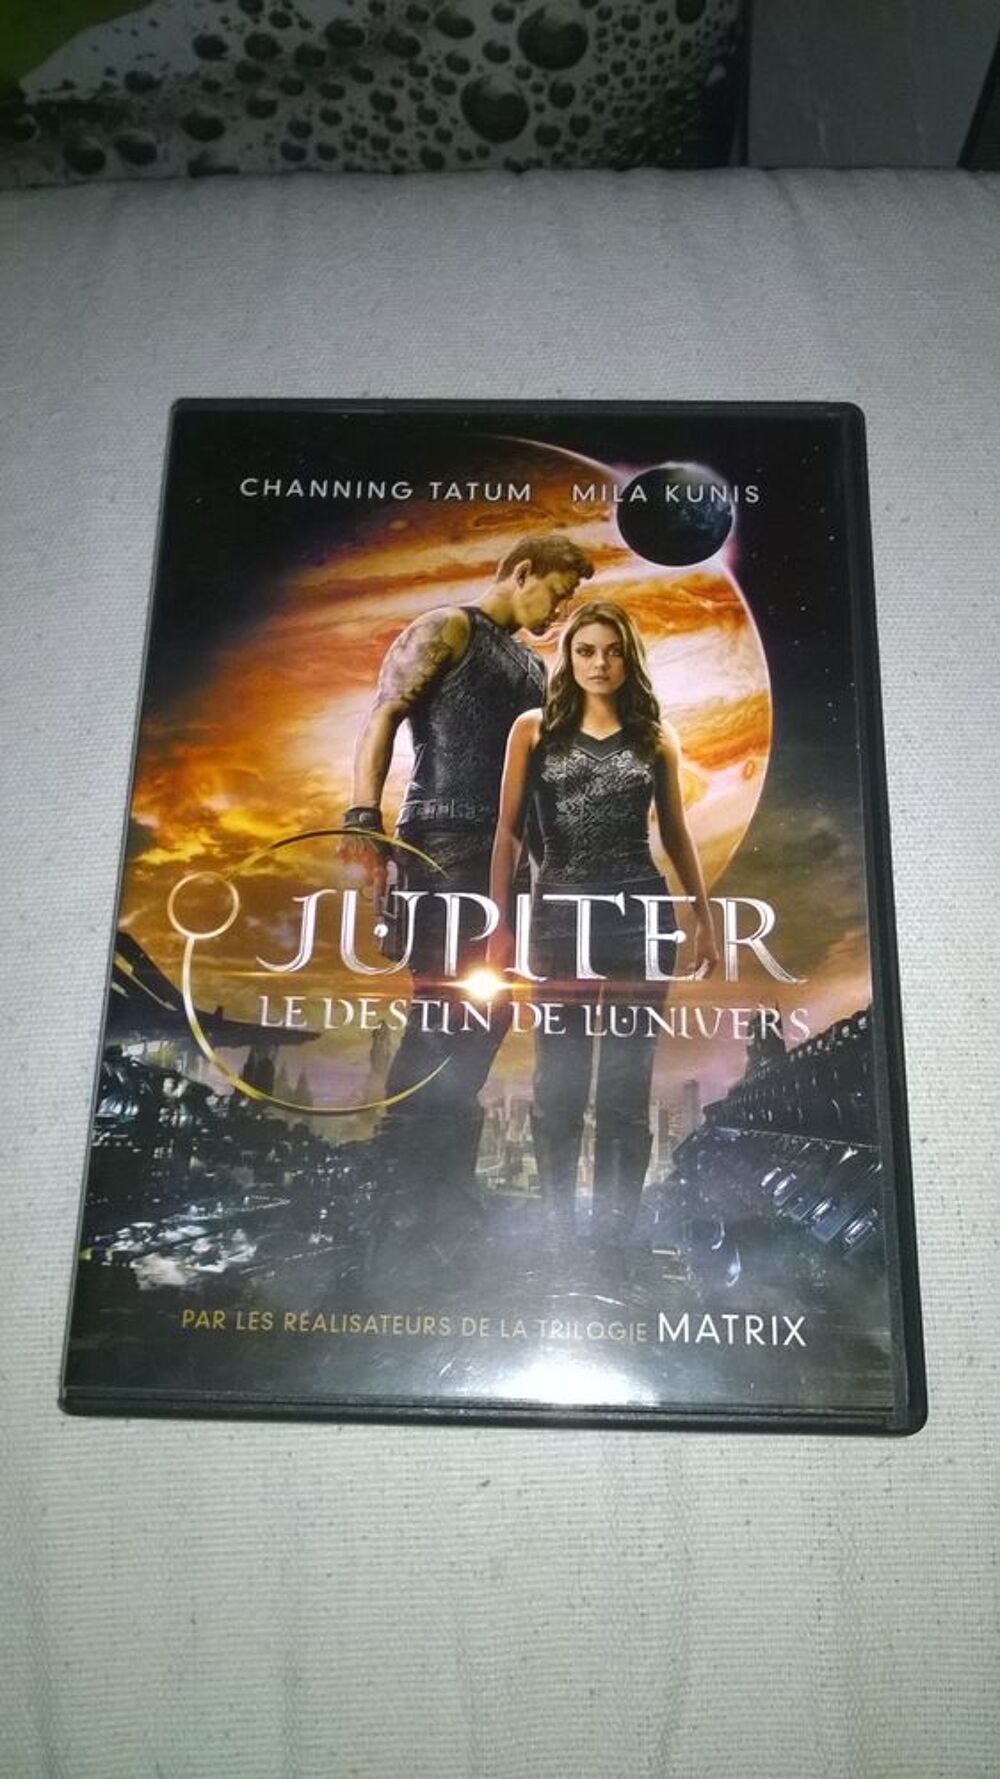 DVD Jupiter 
Le destin de l'Univers 
2014
Excellent etat
DVD et blu-ray